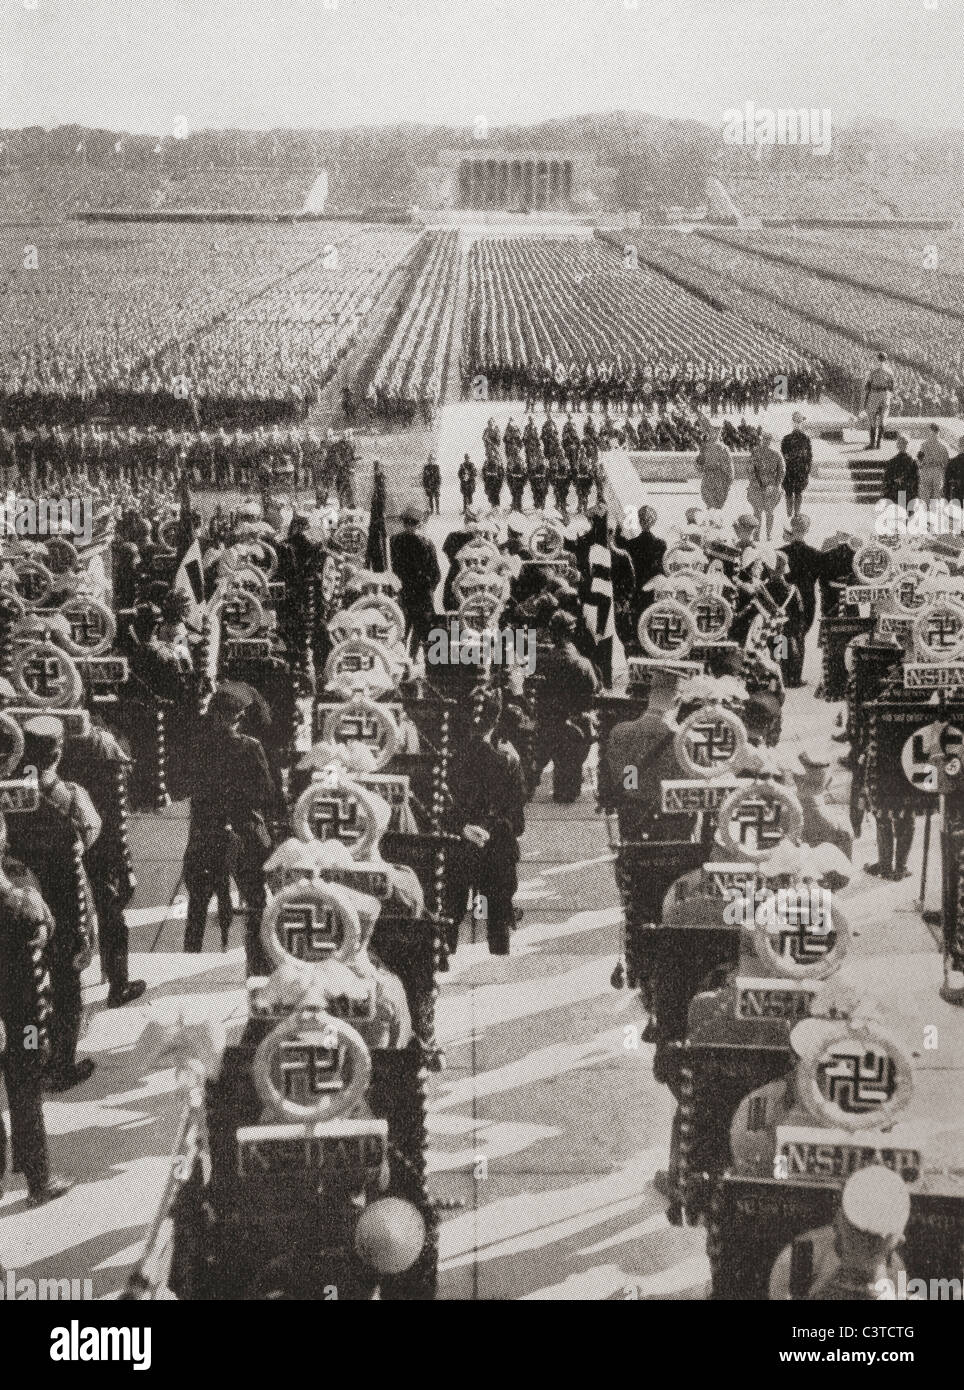 Panoramica della massa roll call di SA, SS, e NSKK truppe al 1935 partito nazista giorno, Luitpold Arena, Norimberga, Germania. Foto Stock